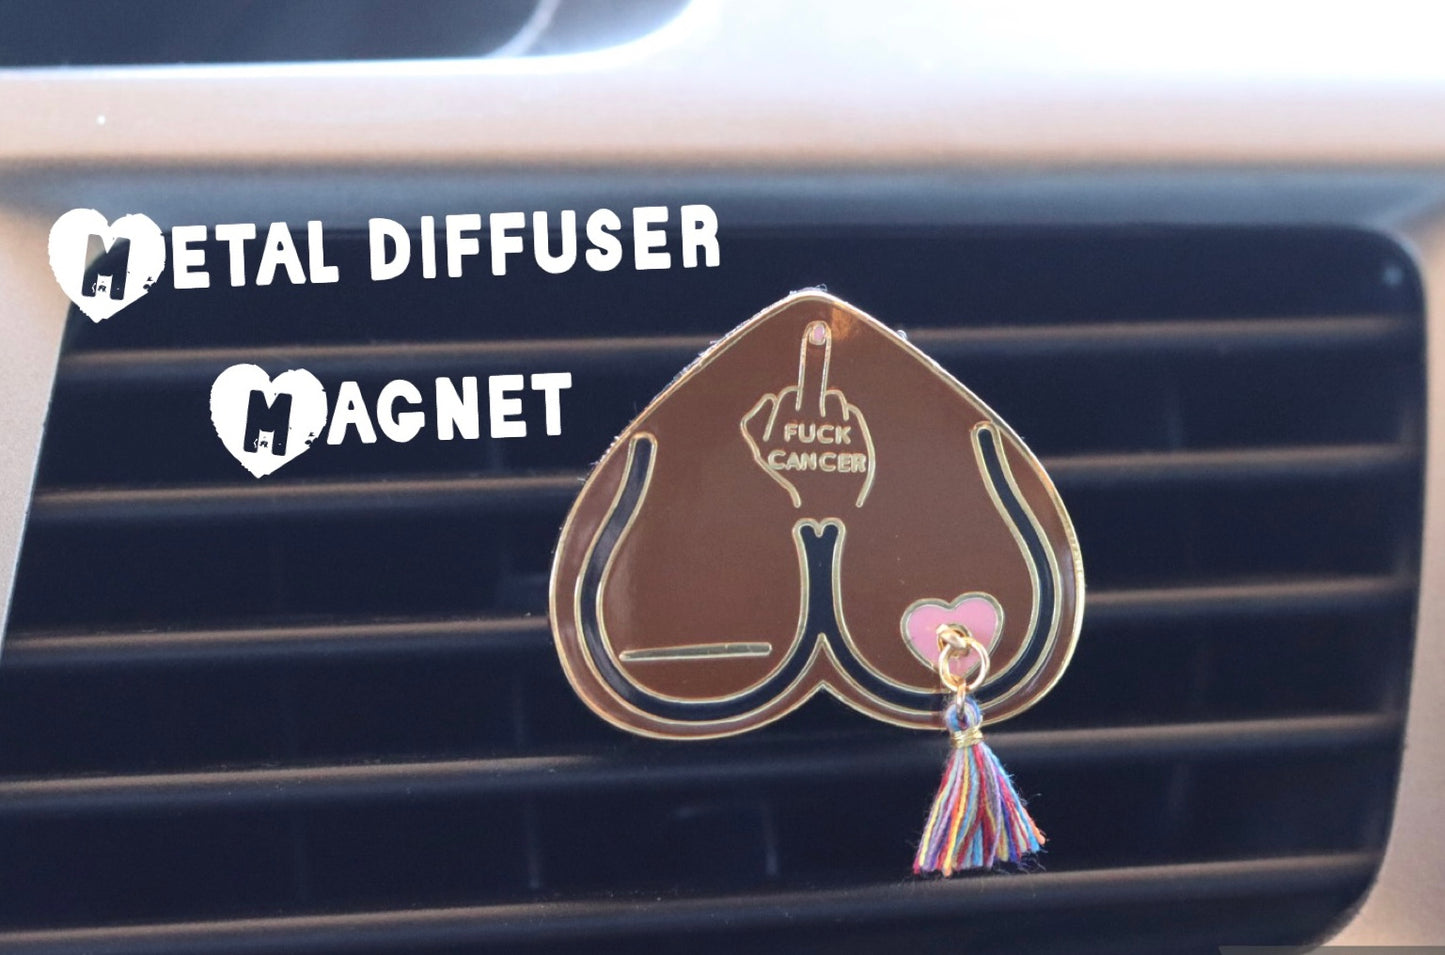 Bewbie Tassel Felt Car Freshener | Magnet | Dark skin/fuck cancer 1.5"